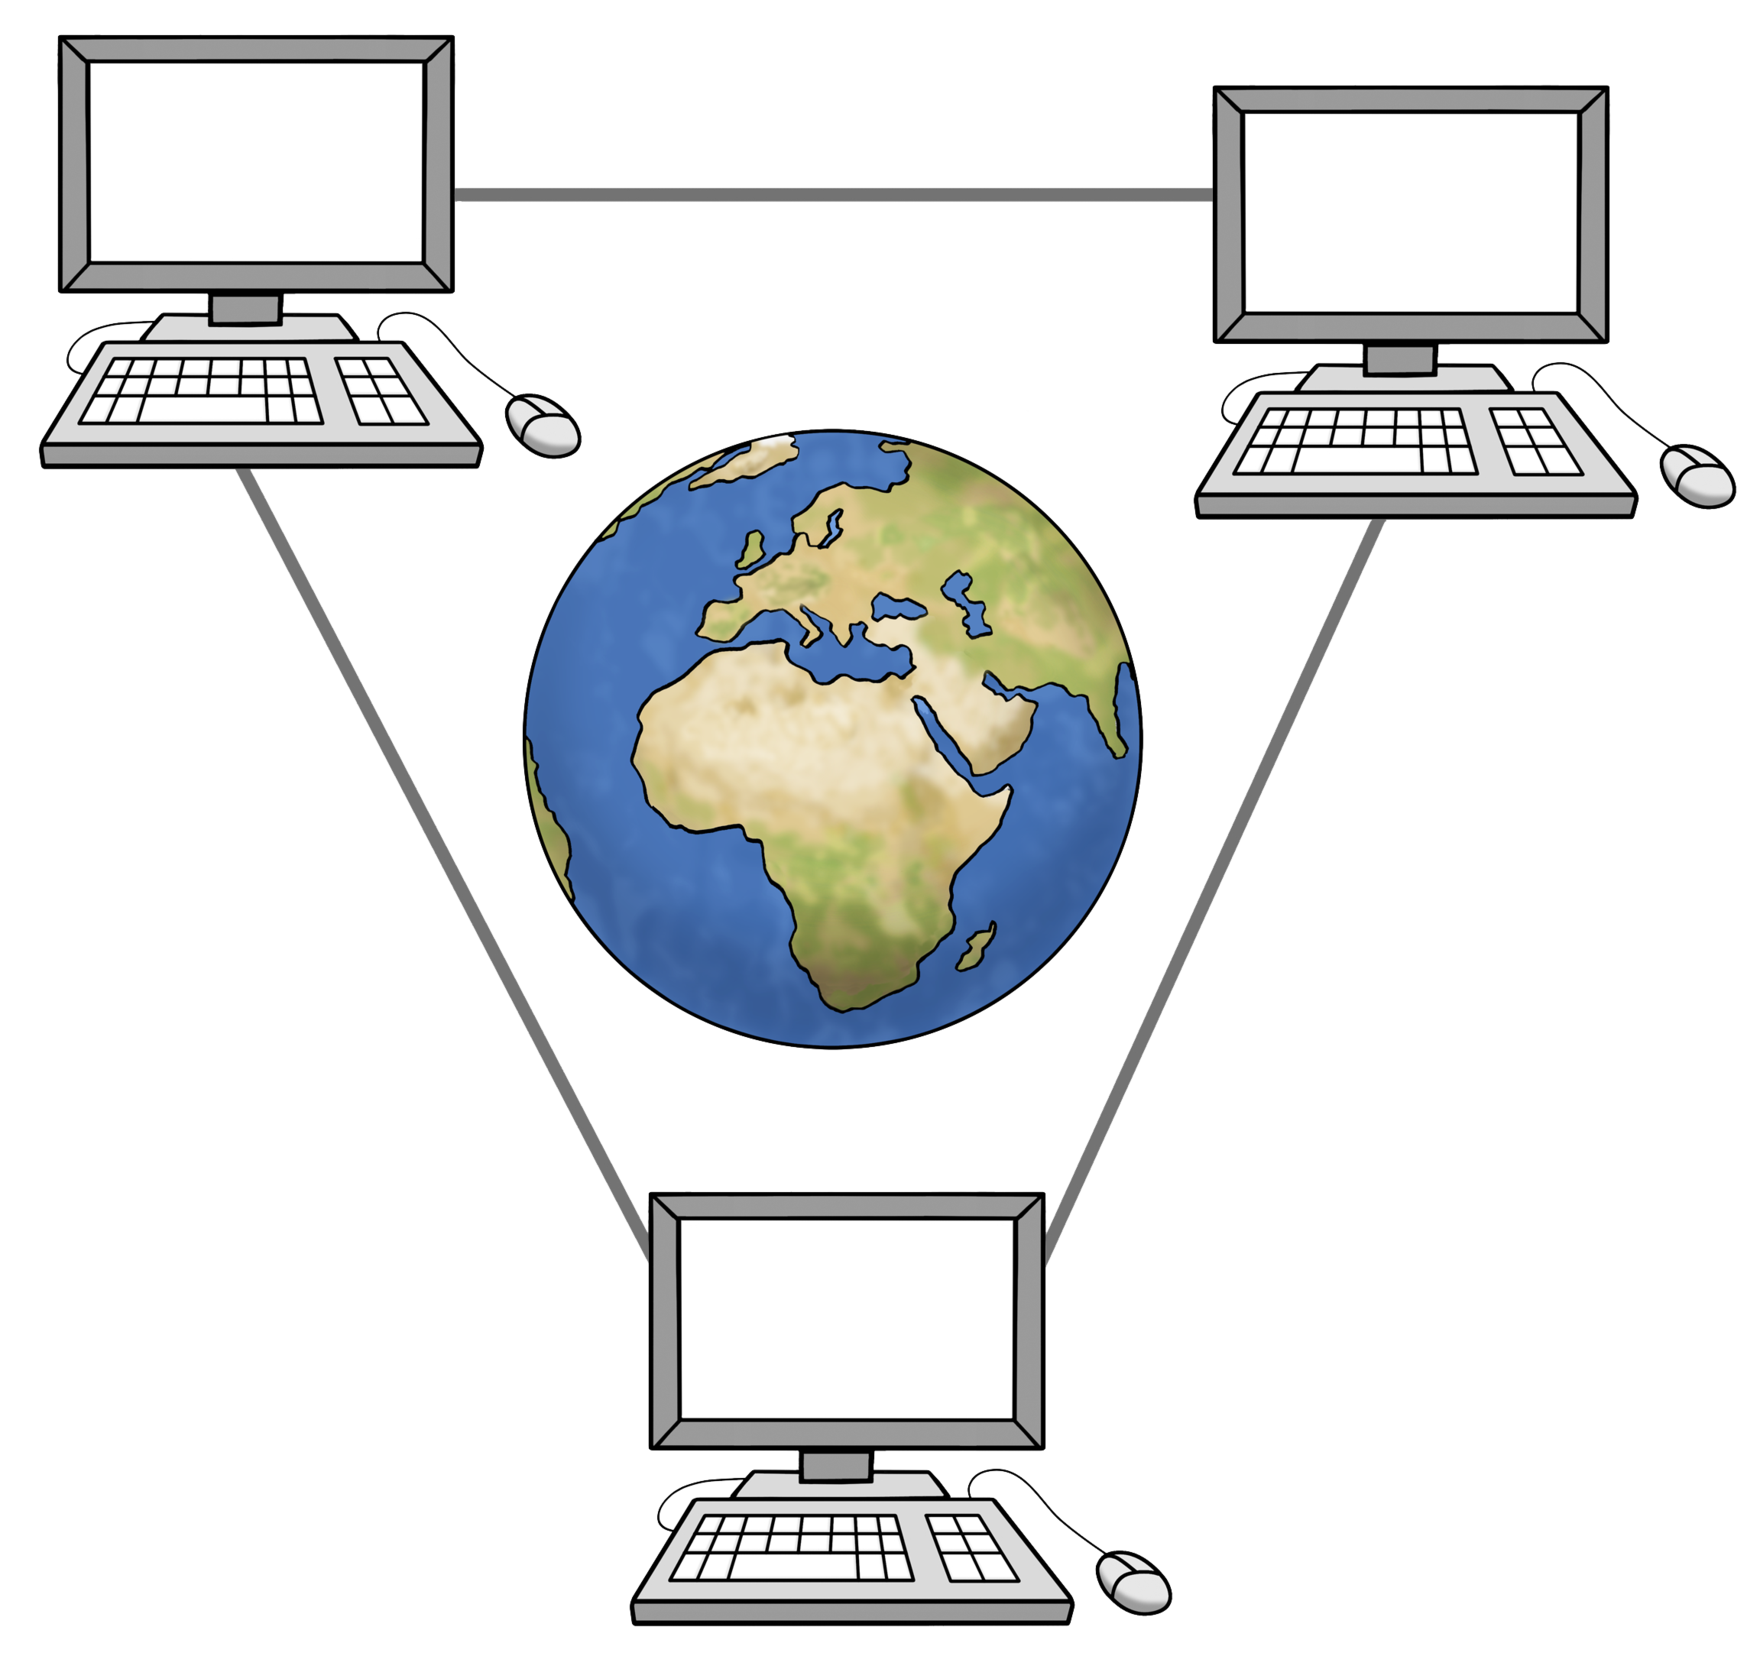 Grafik: Abbildung einer Weltkugel. Drum herum sind 3 Computer platziert, die durch dünne Linien verbunden sind.